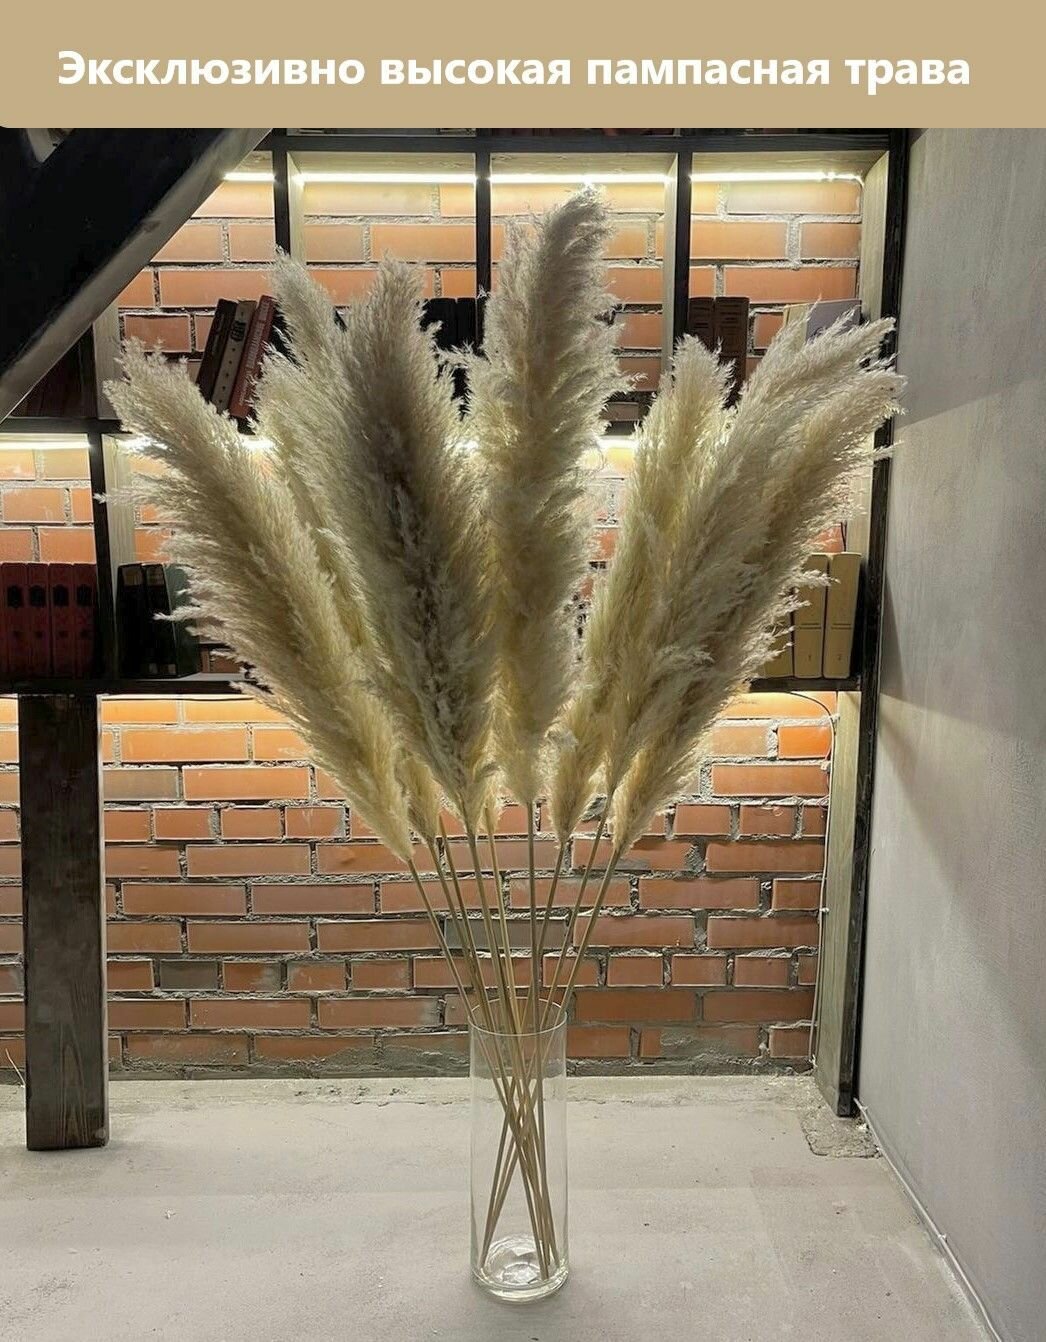 Пампасная трава Luxe Пшеничный